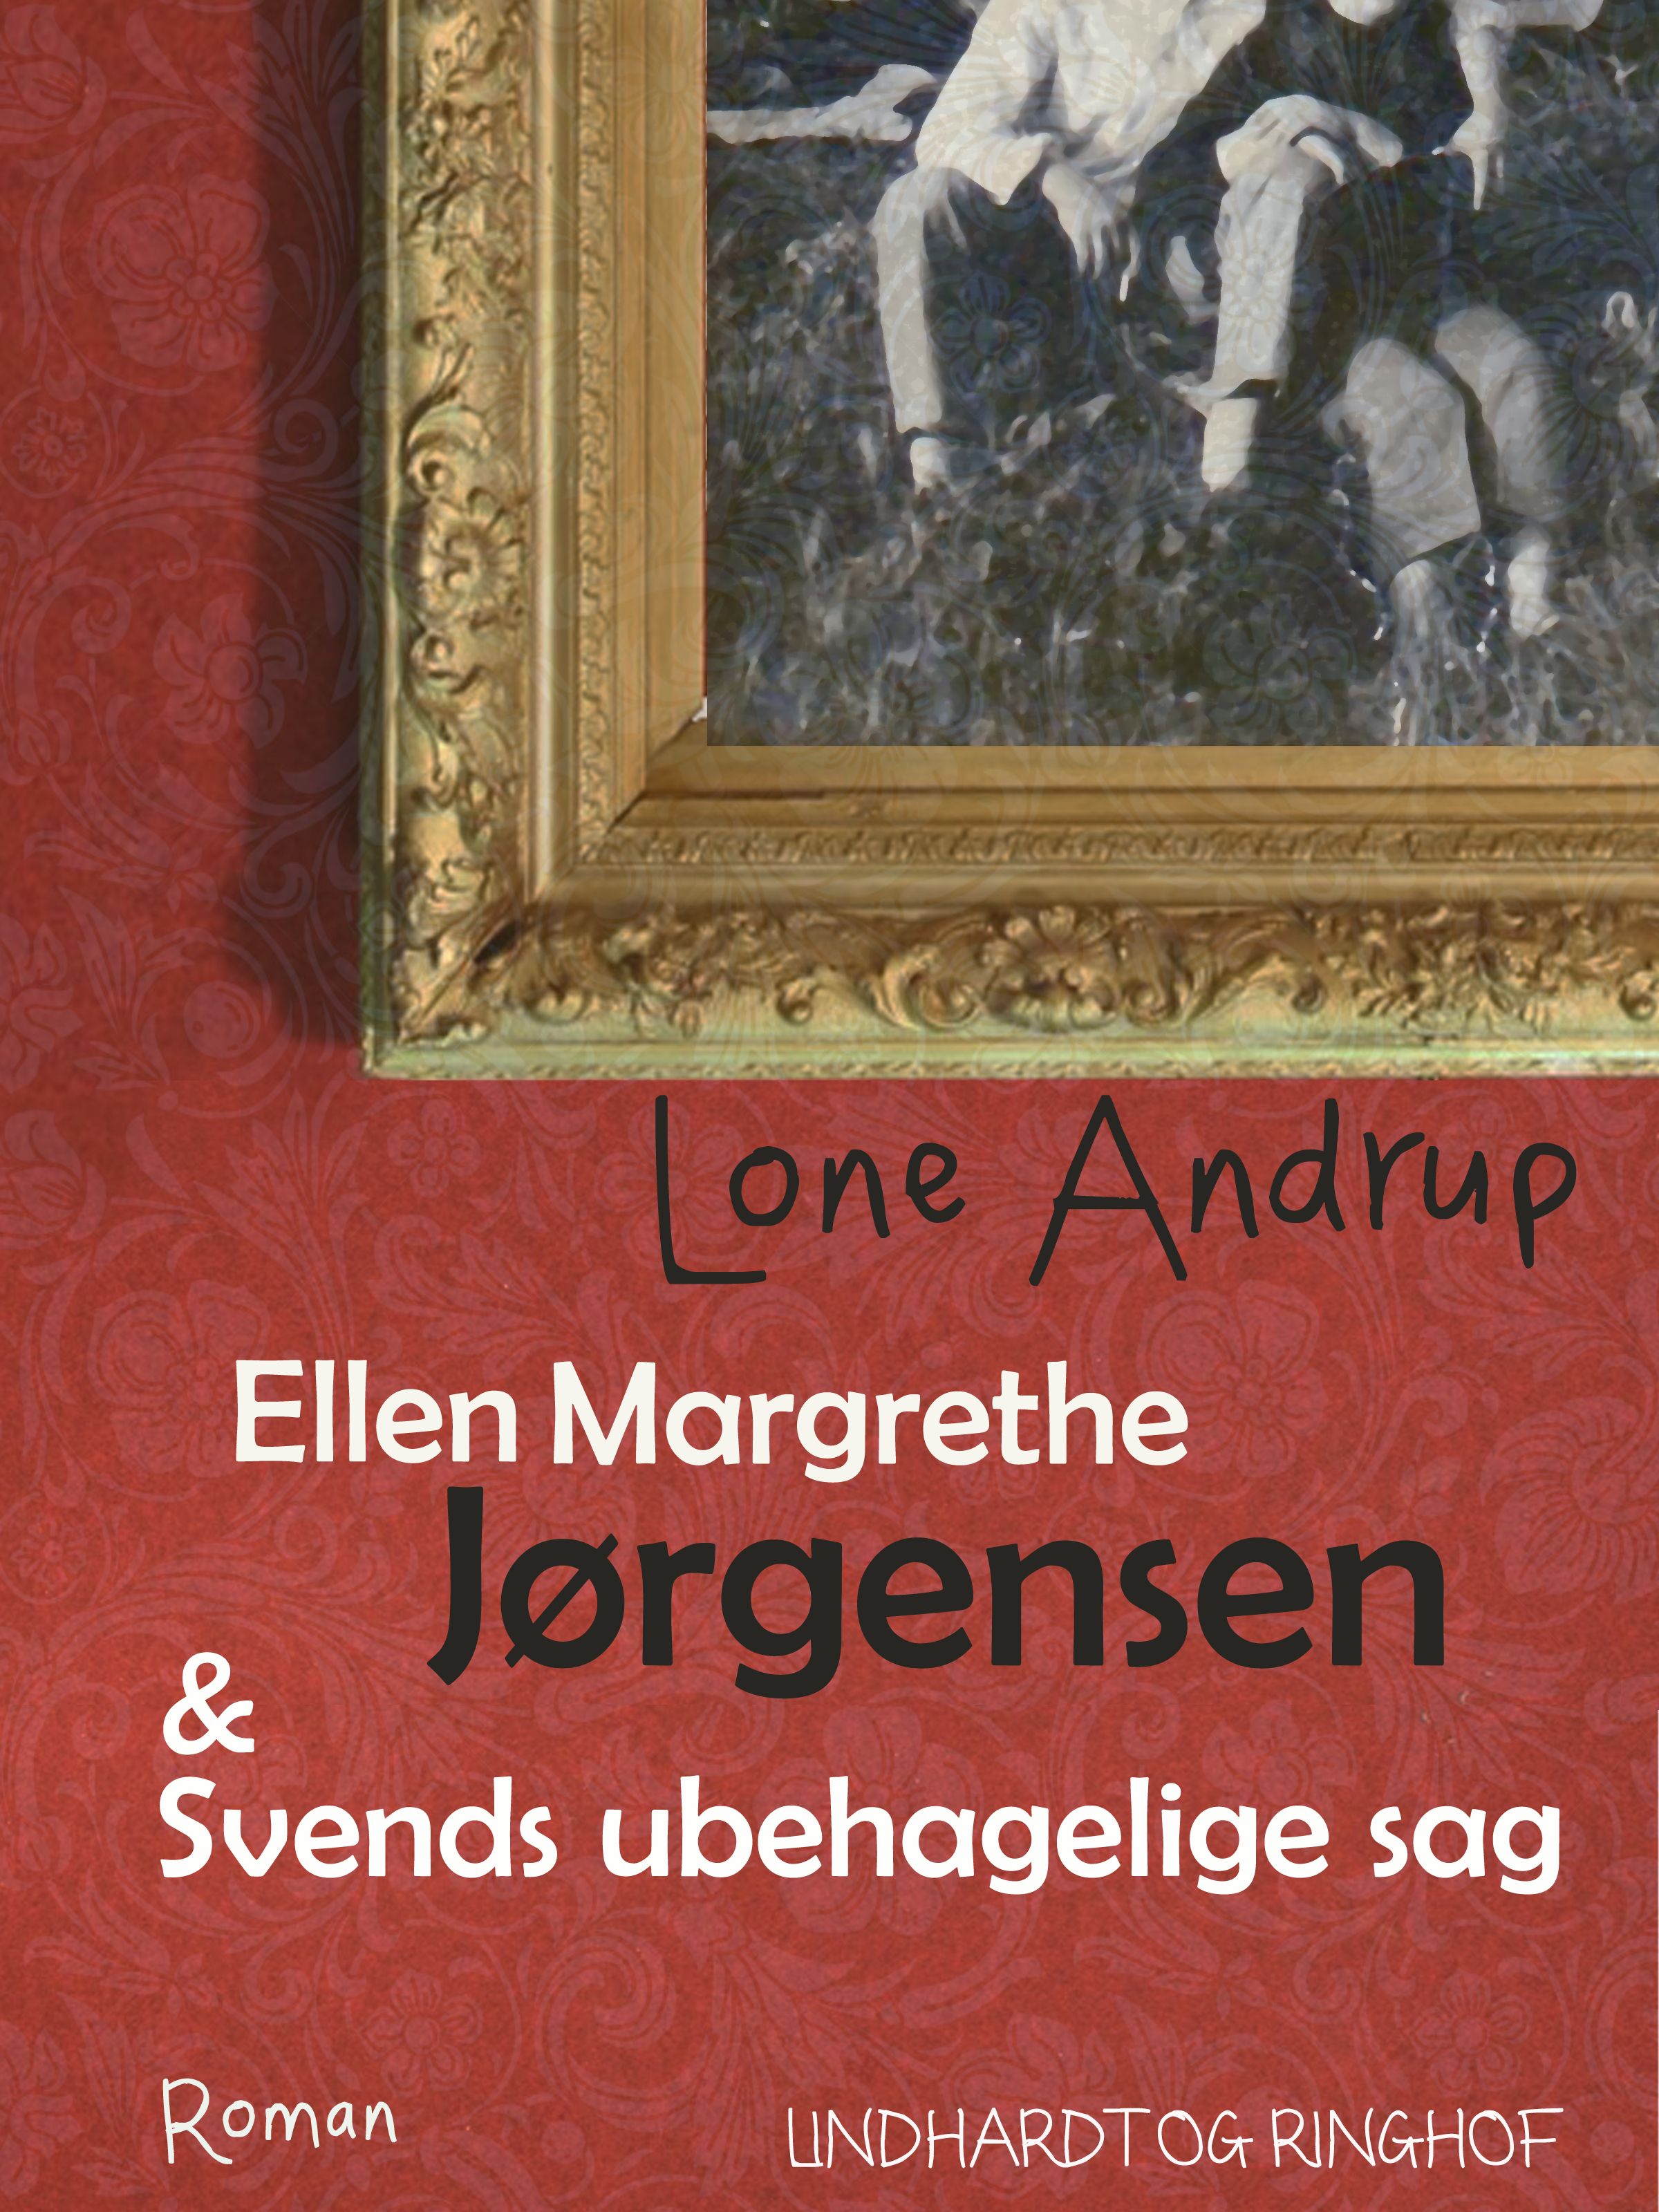 Ellen Margrethe Jørgensen & Svends ubehagelige sag, e-bok av Lone Andrup